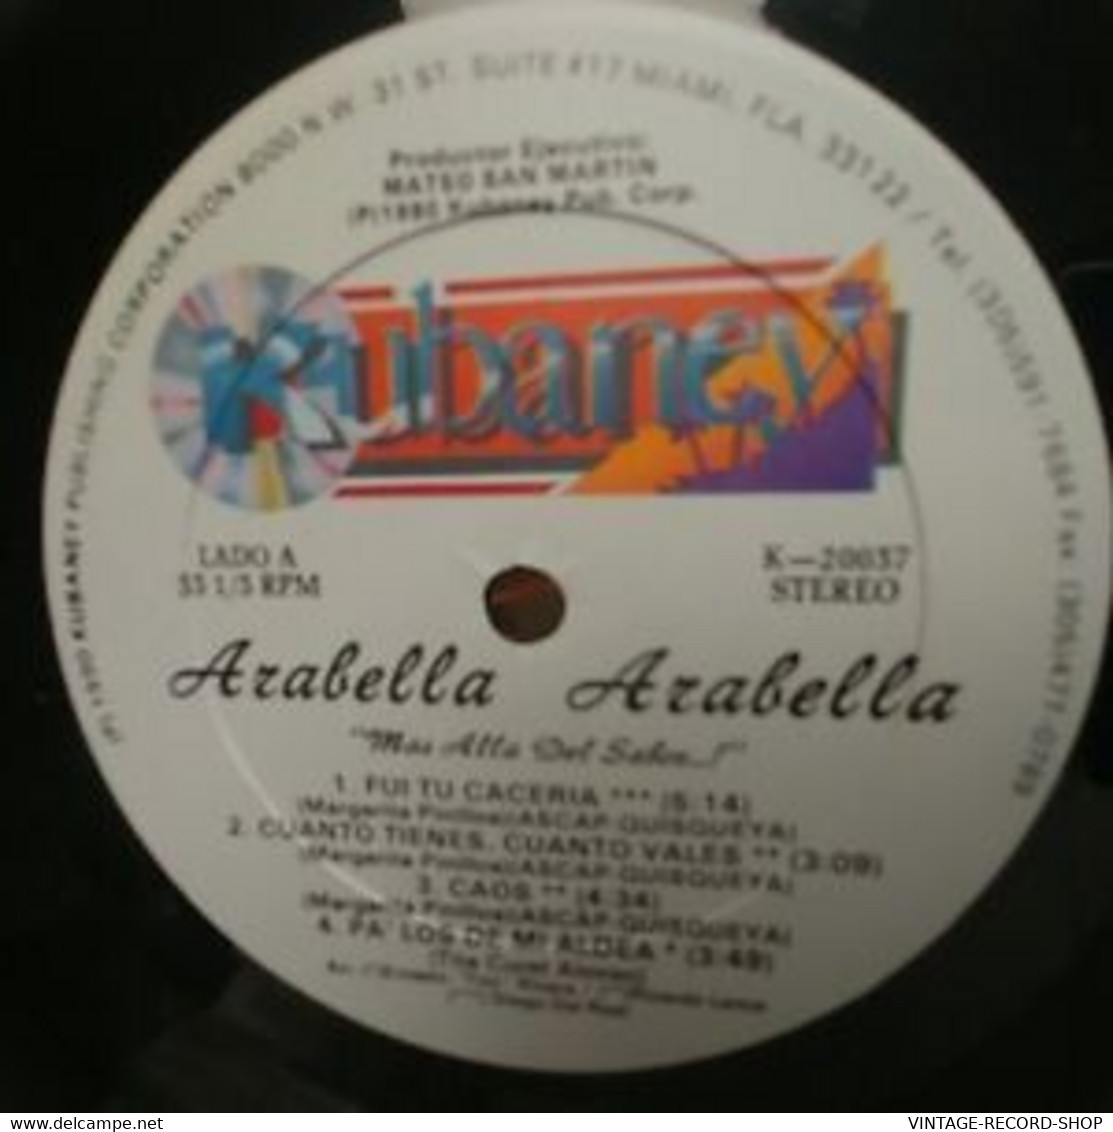 ARABELLA-MAS ALLA DEL SABOR - Sonstige - Spanische Musik